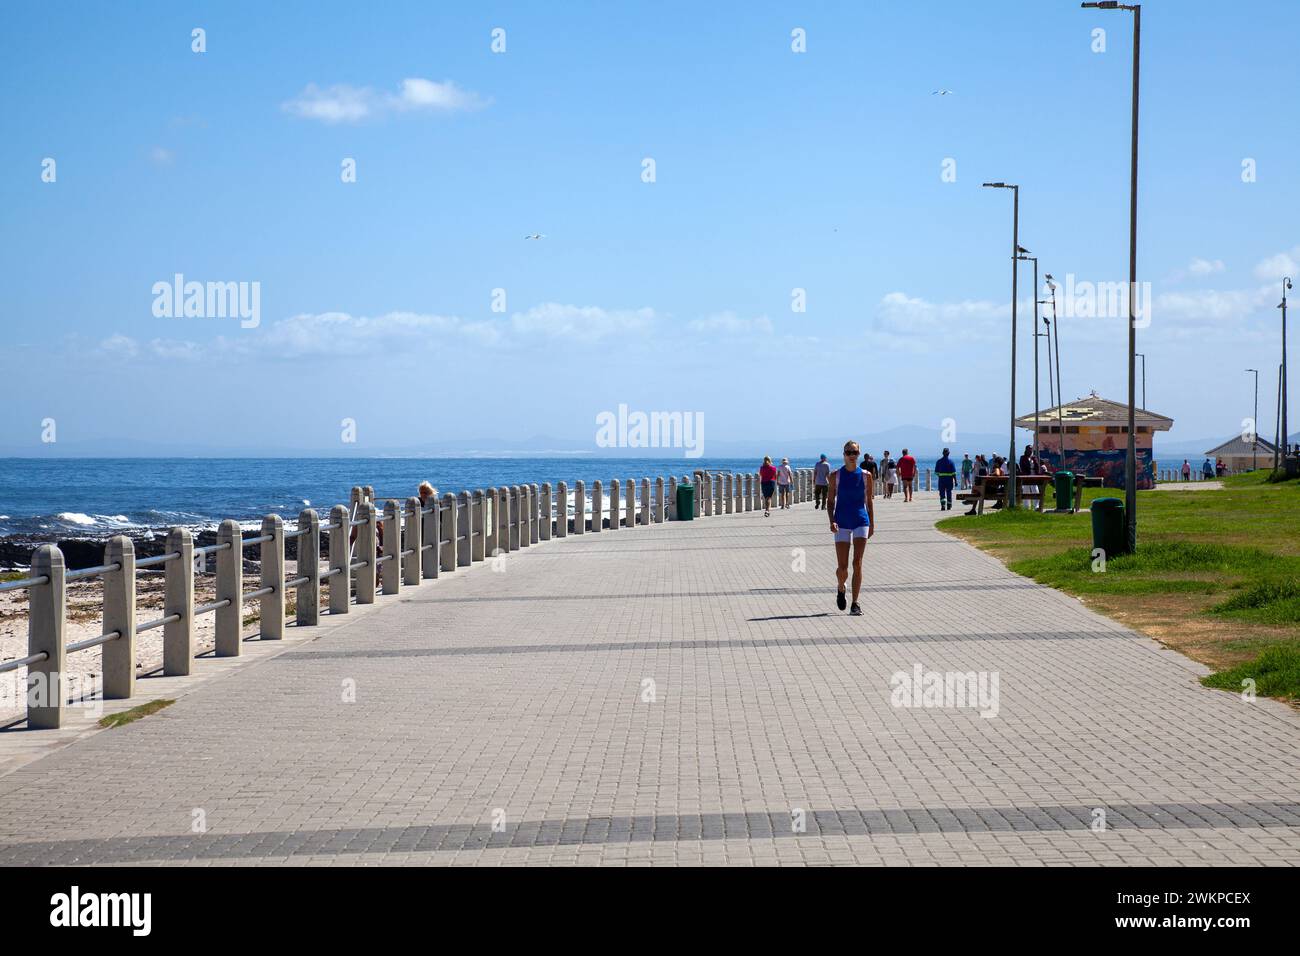 Gens marchant sur Sea point Promenade, Cape Town - Afrique du Sud Banque D'Images